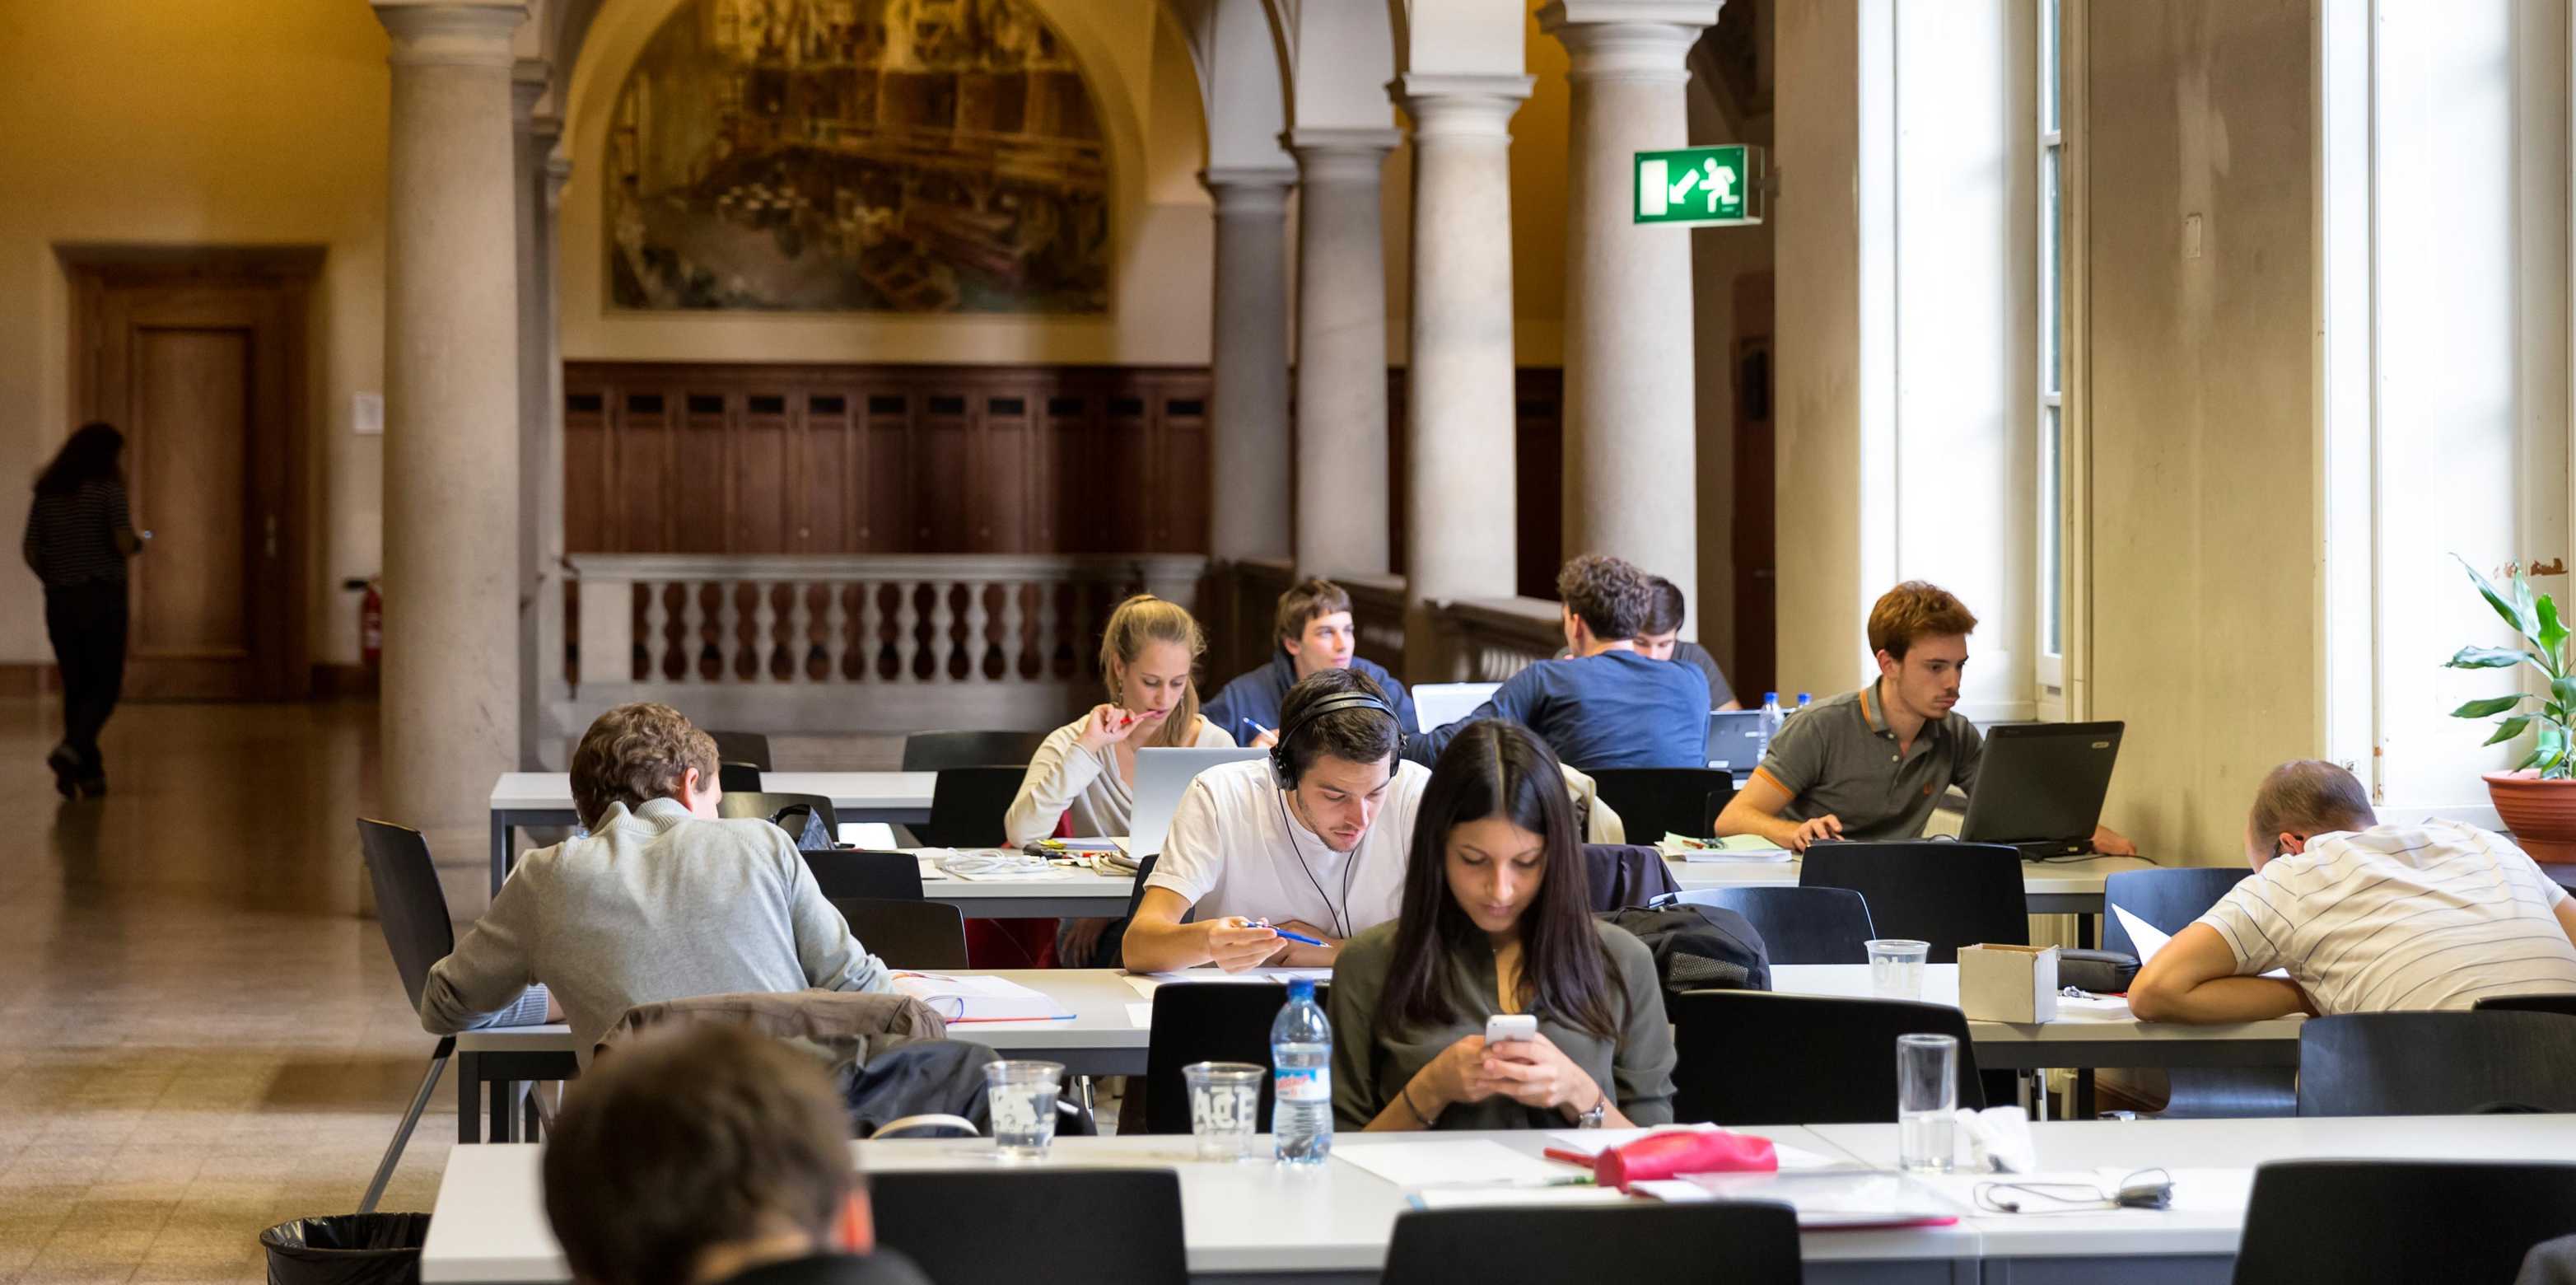 Studierende beim Lernen im Hauptgebäude der ETH Zürich